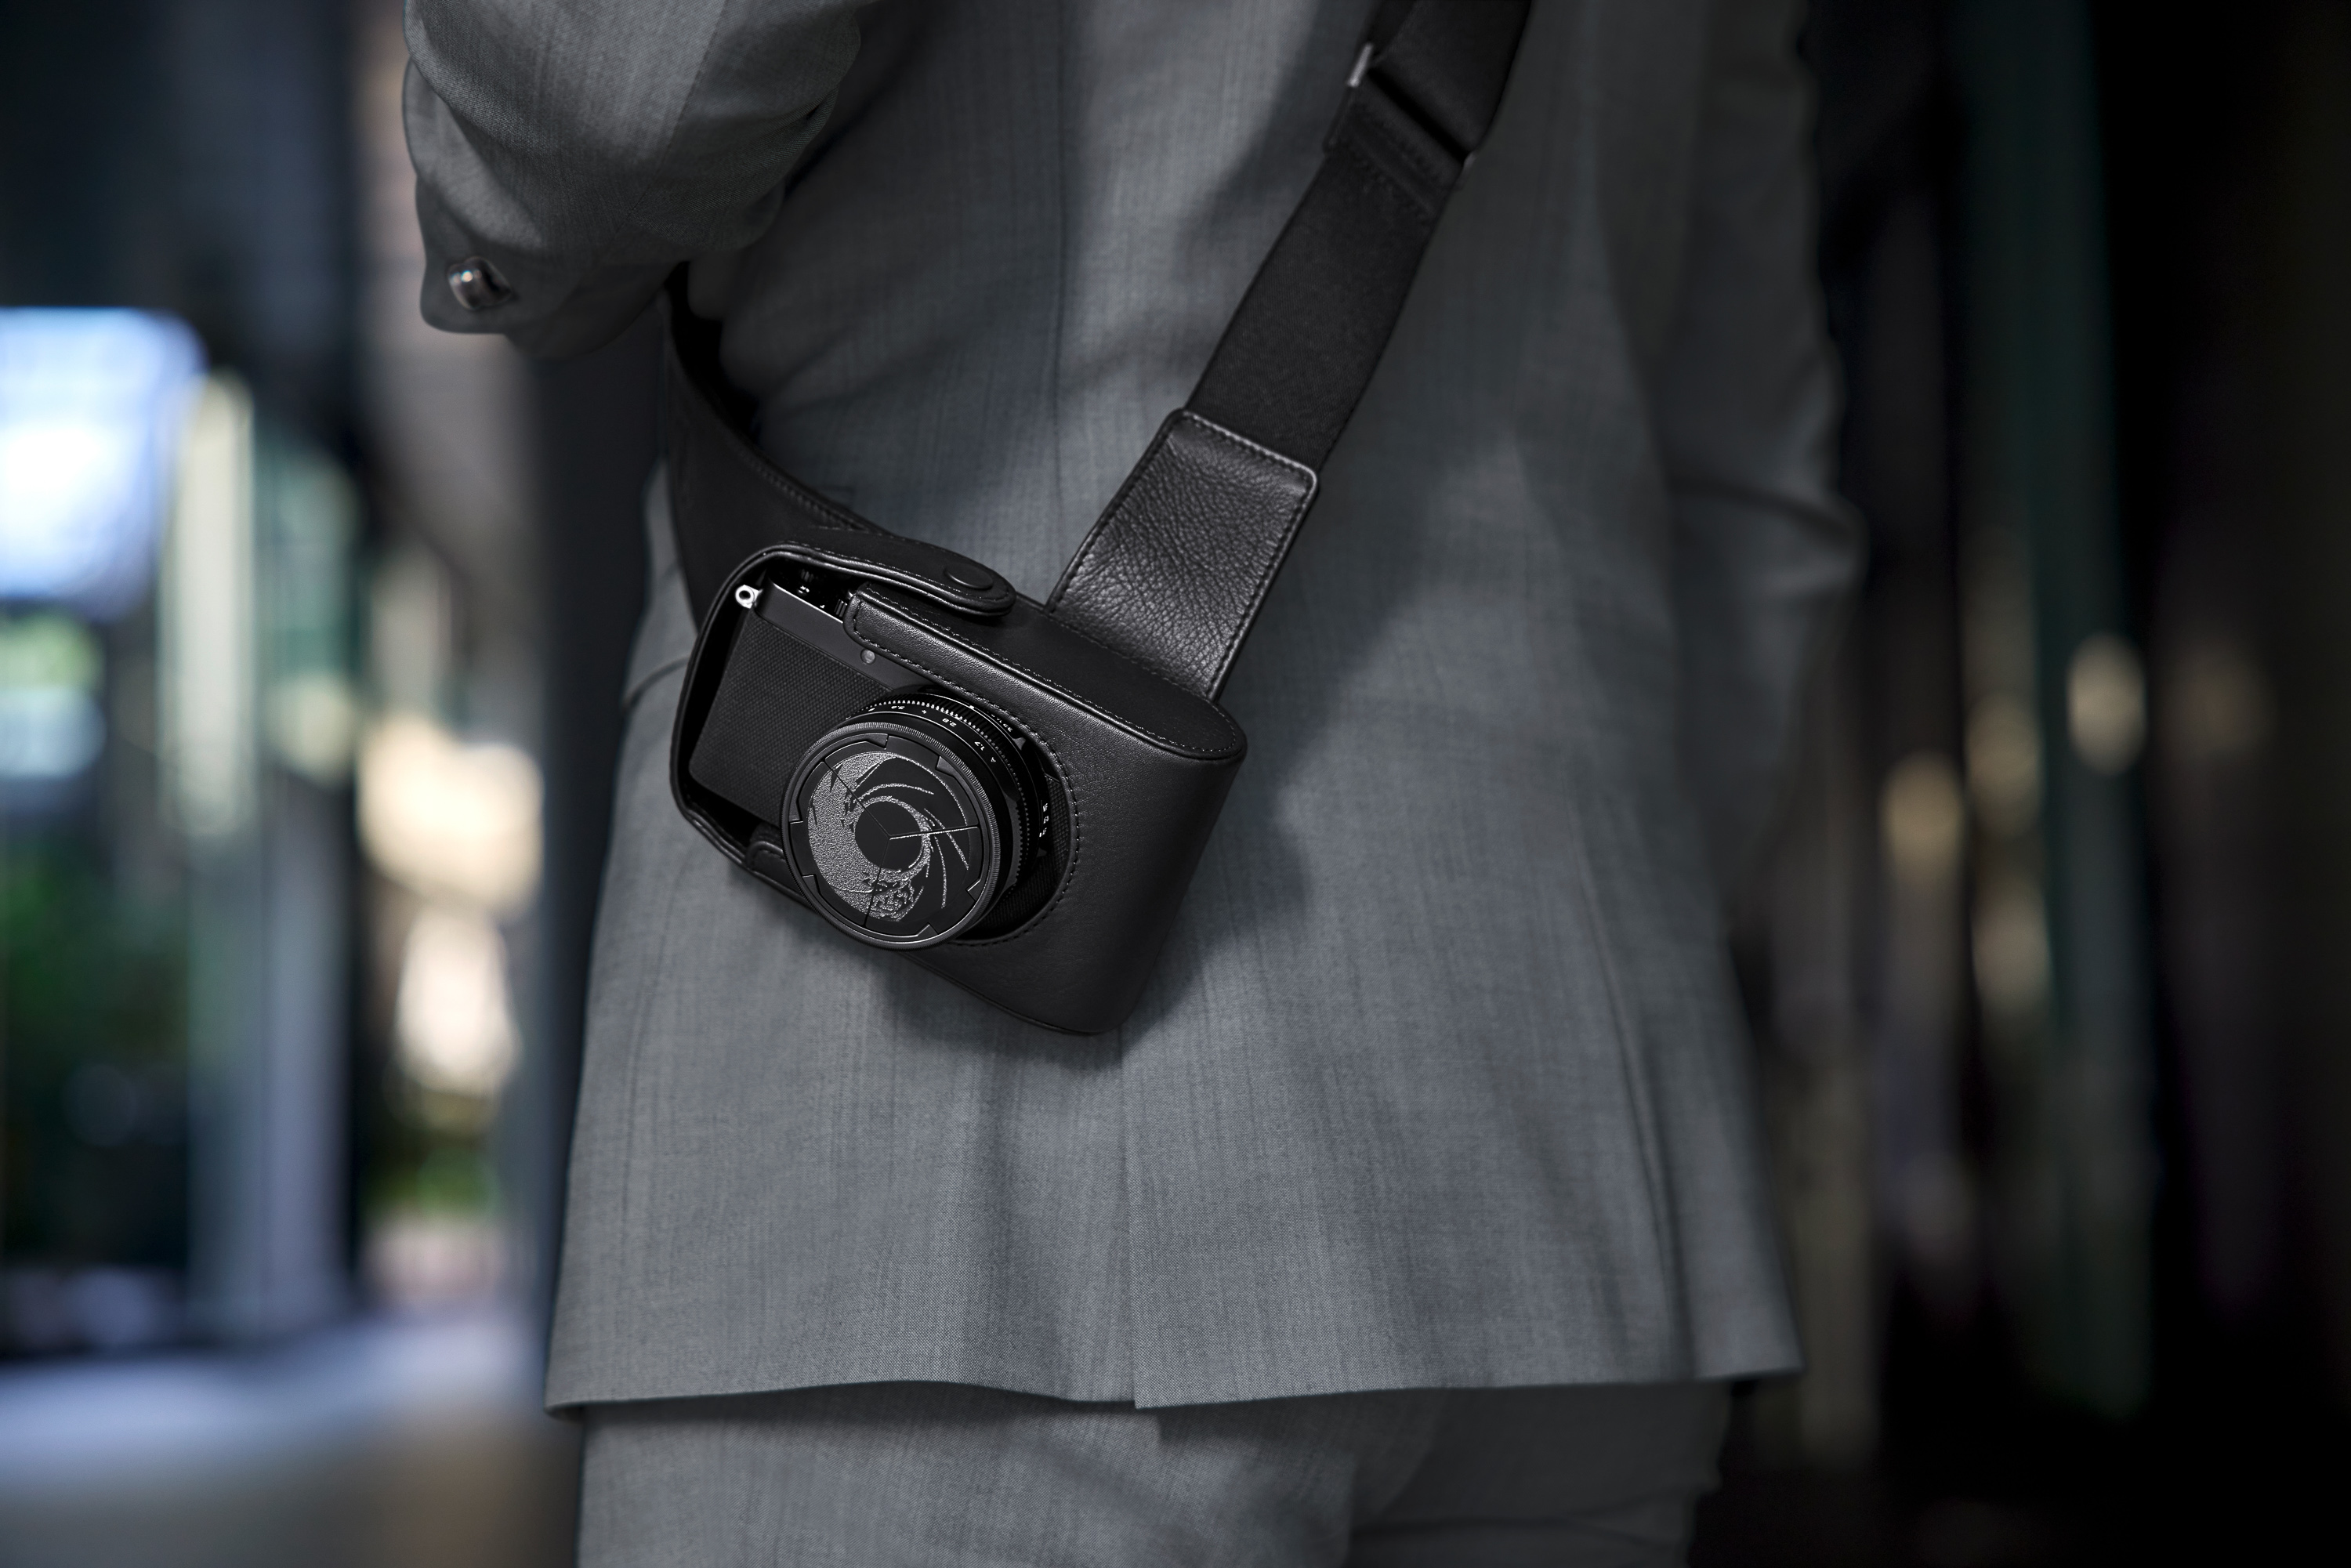 My Under $300 Leica D-Lux 7 007 James Bond Alternative THAT NO ONE